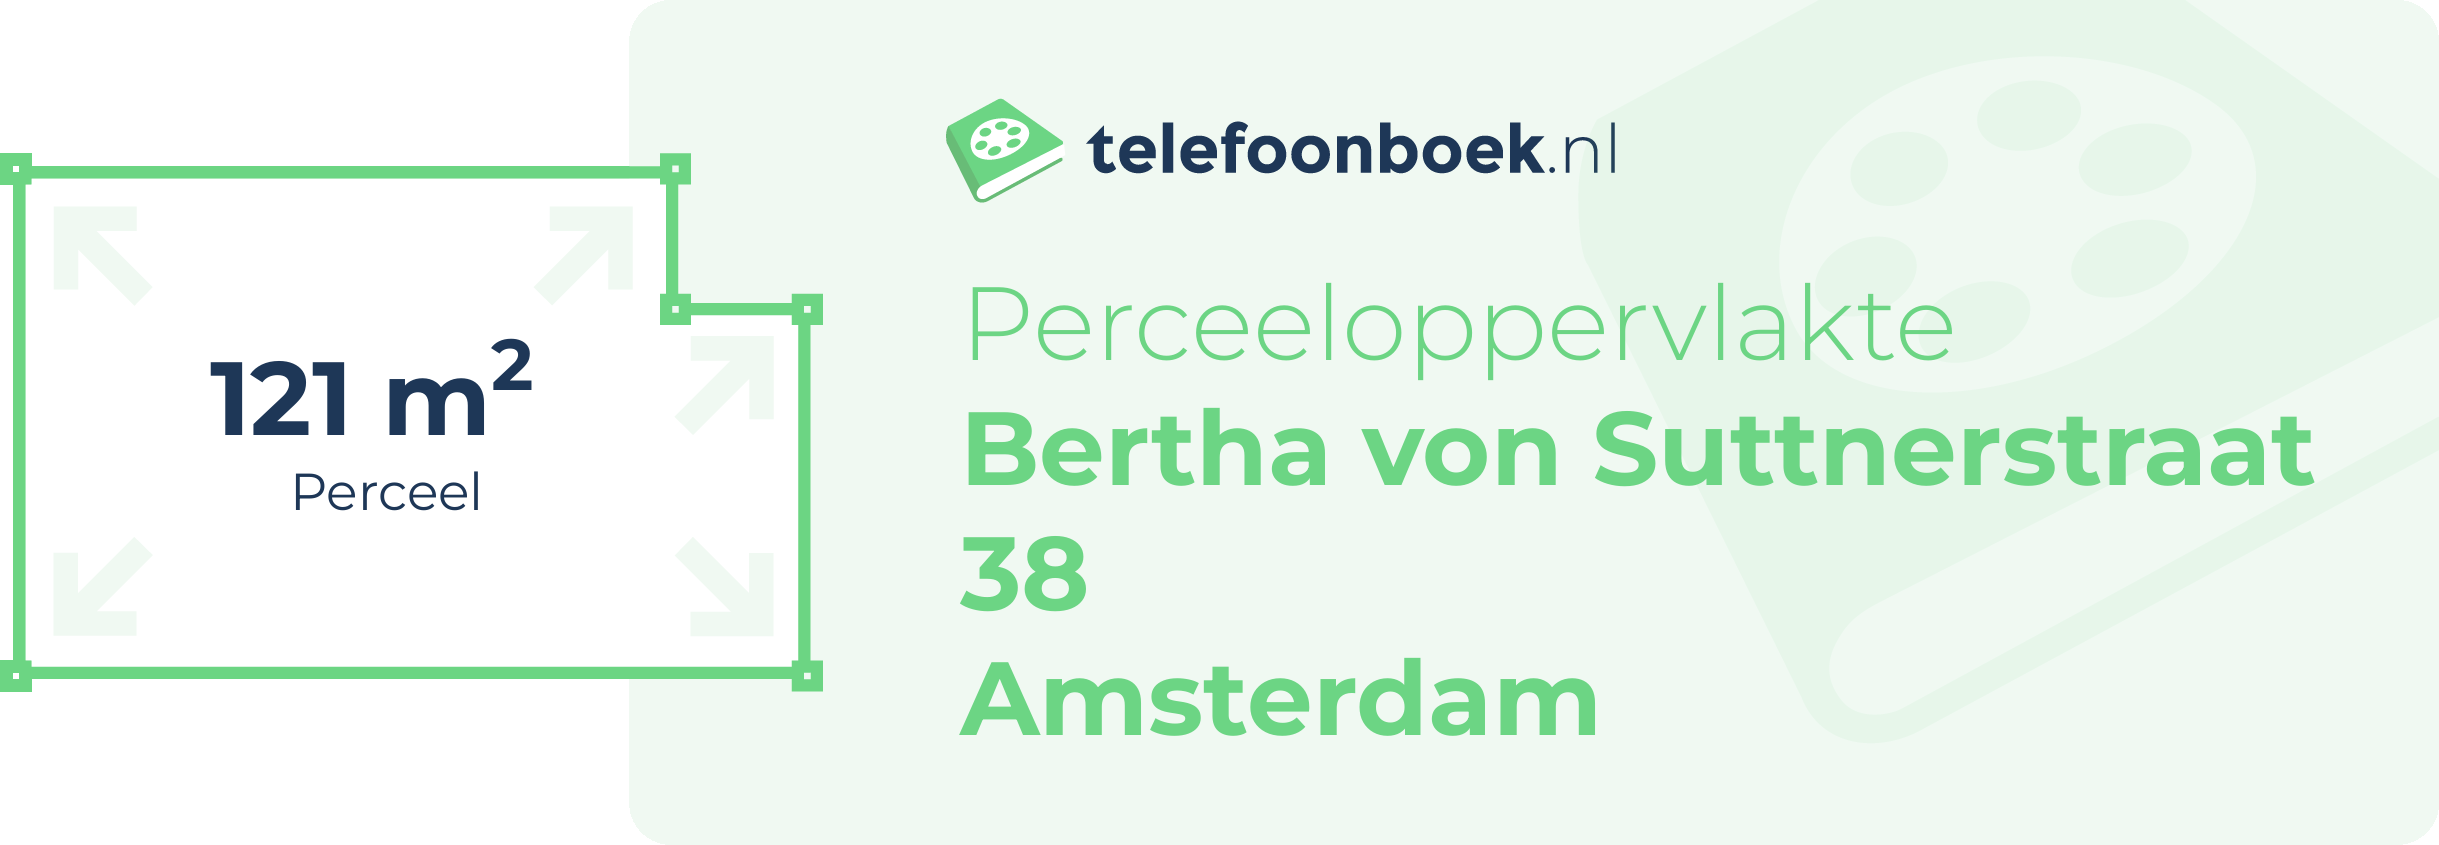 Perceeloppervlakte Bertha Von Suttnerstraat 38 Amsterdam